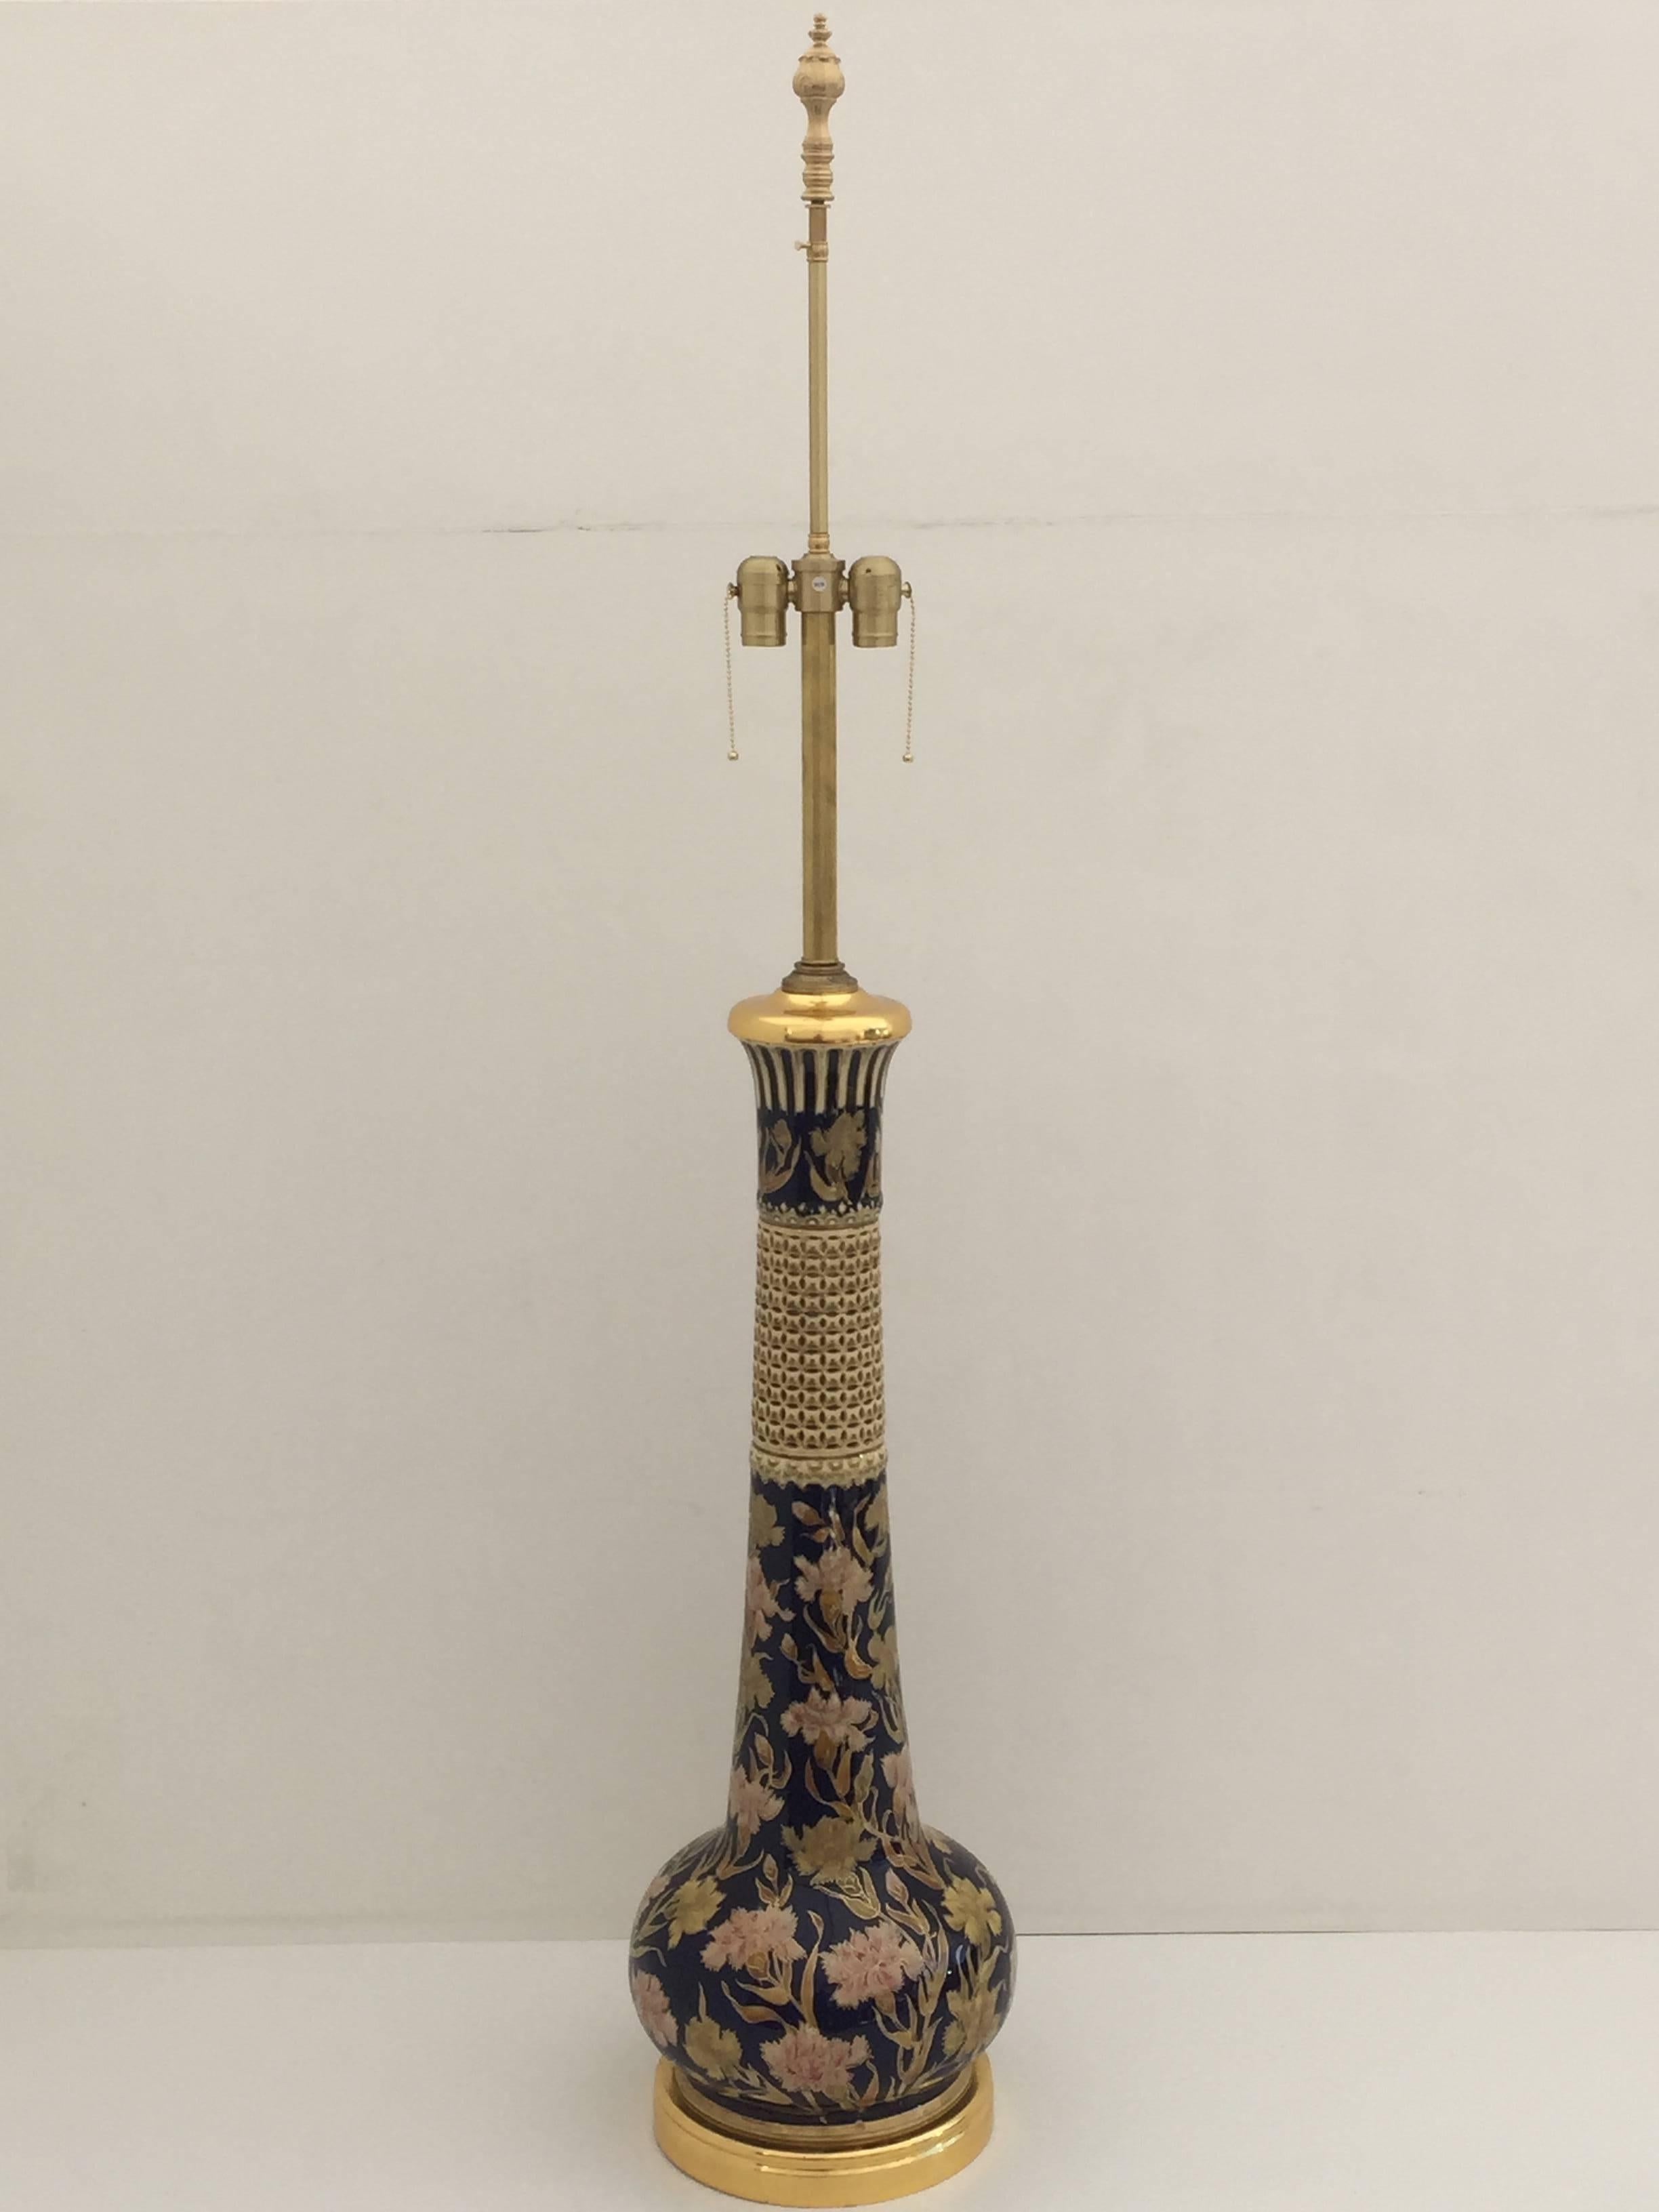 Riesige Lampe aus Keramik und 24-karätigem Blattgold mit islamischem Blumenmuster.
Nur das Keramikteil selbst ist 32